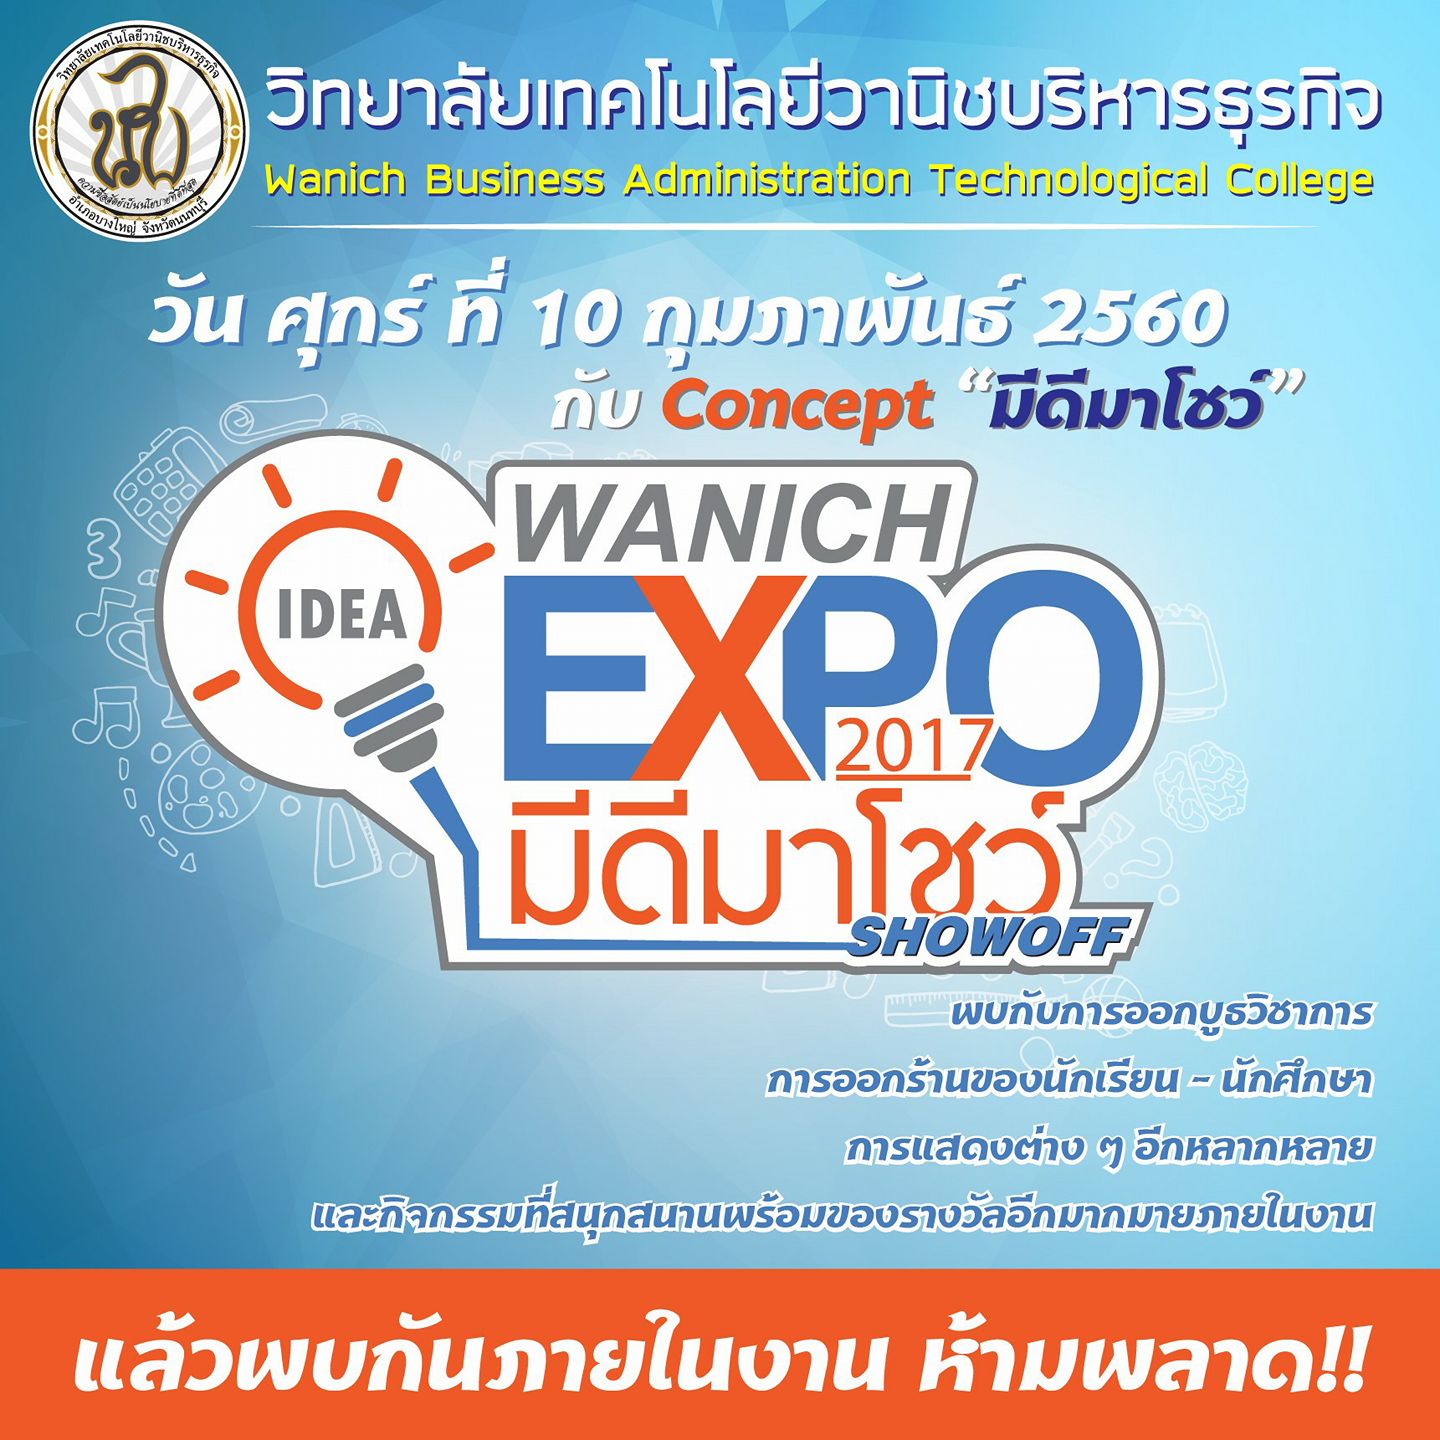 Wanich Expo 2017